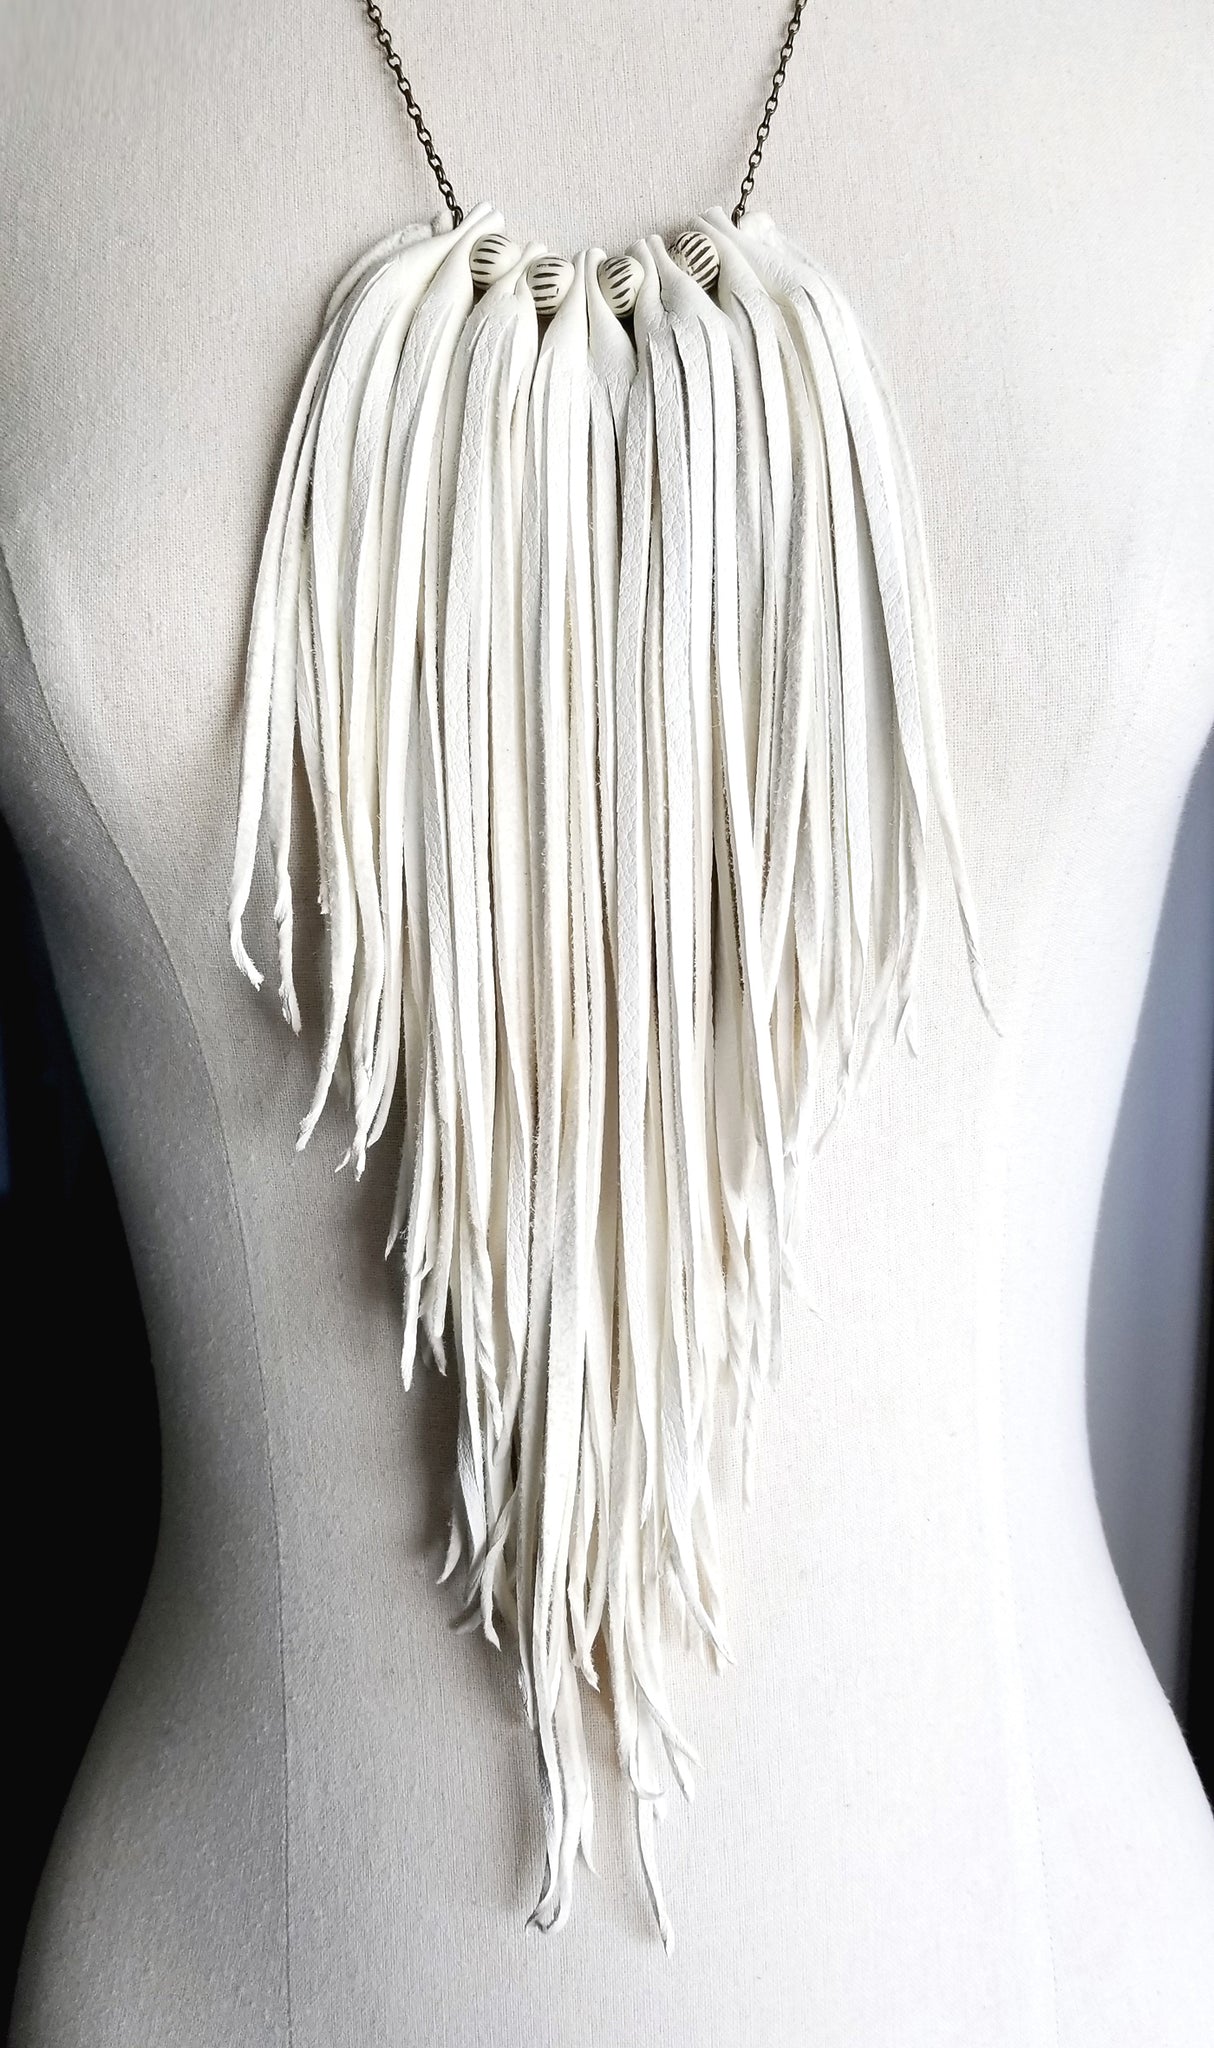 Badu Leather Fringe Necklace on dress form